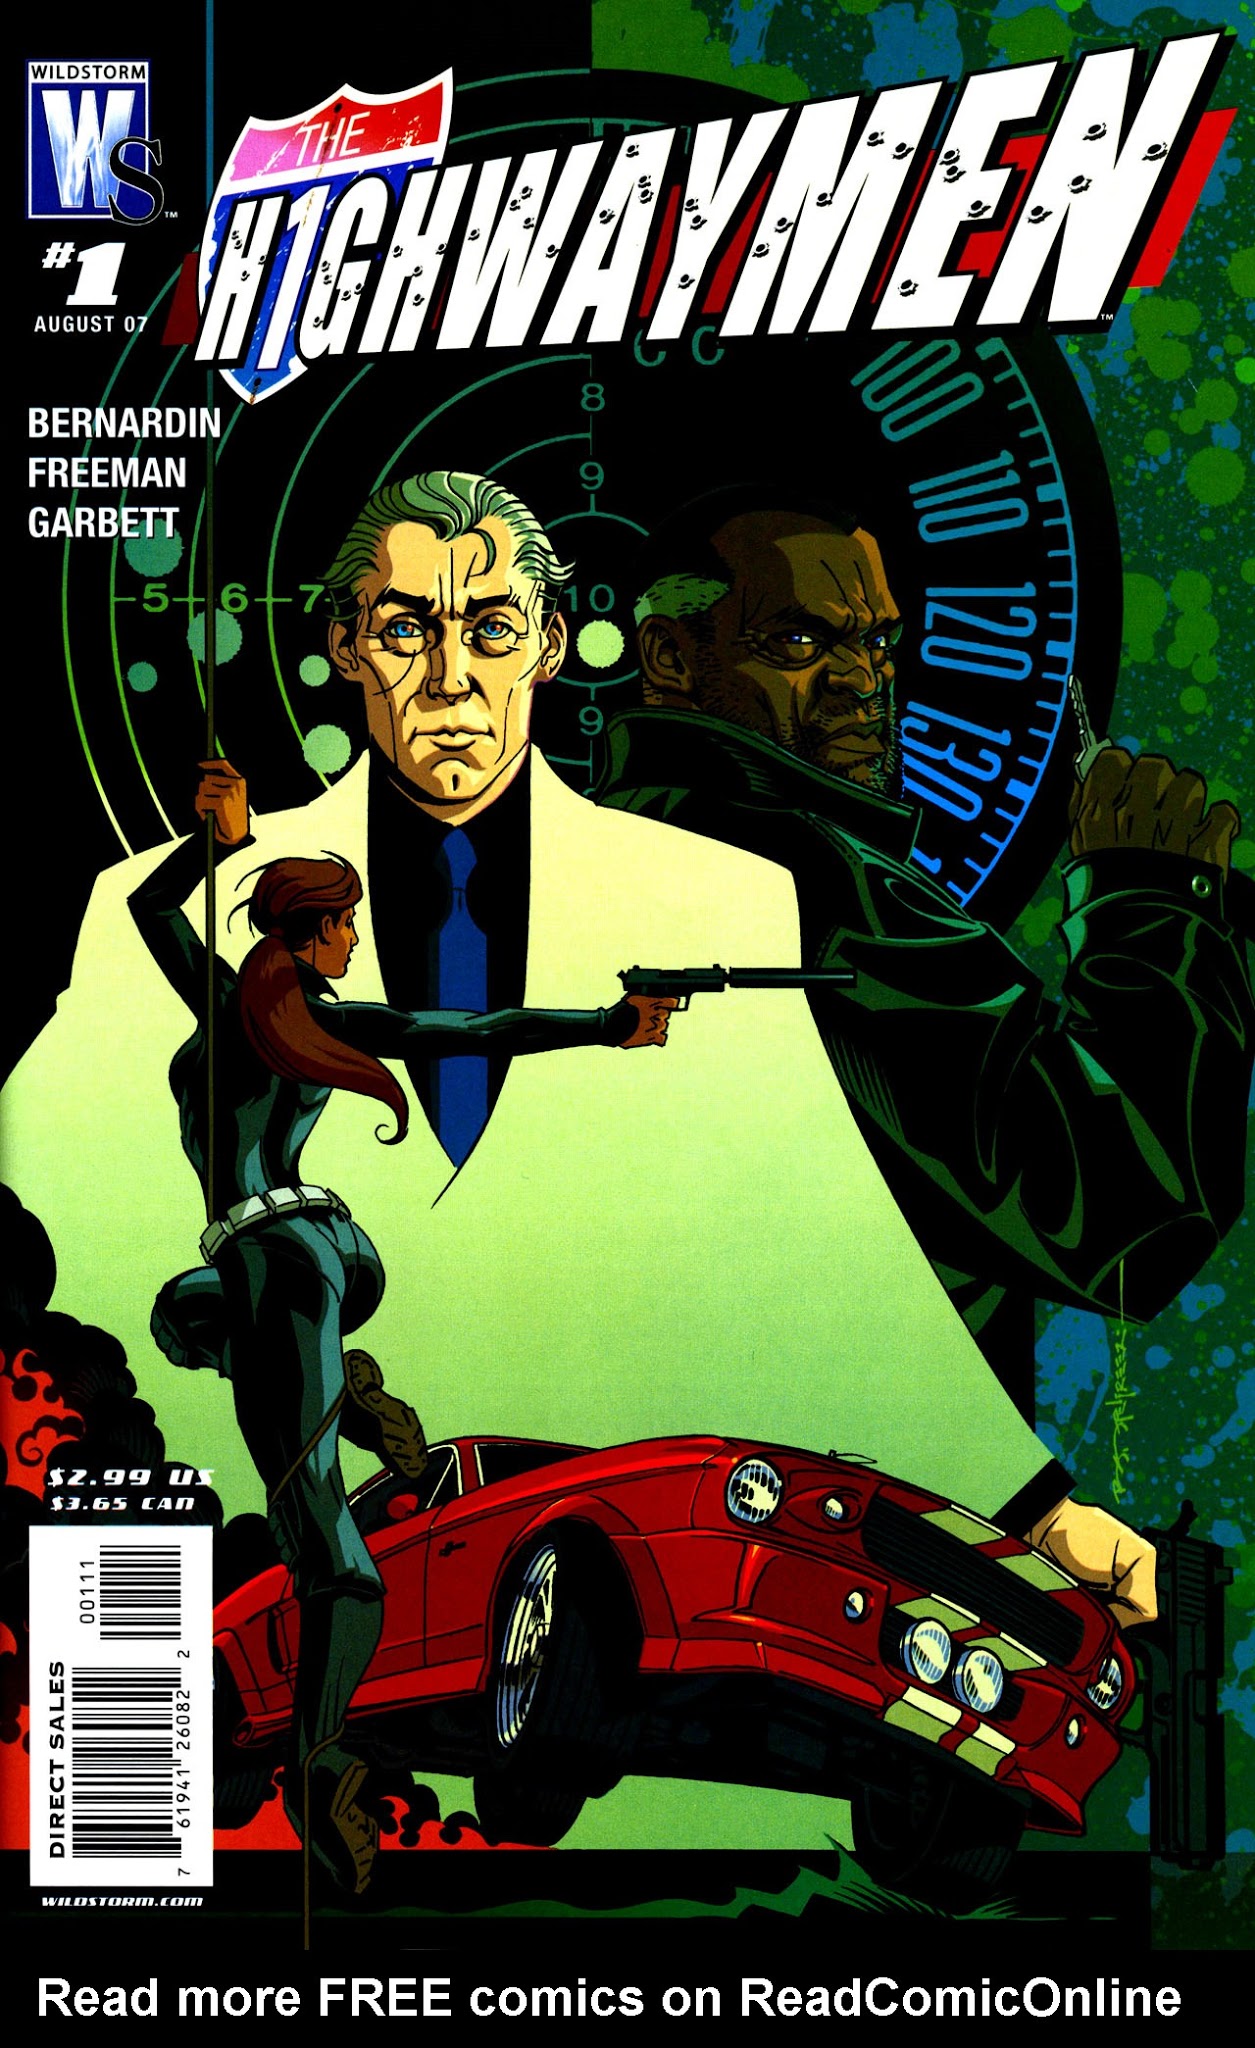 Read online The Highwaymen comic -  Issue #1 - 1